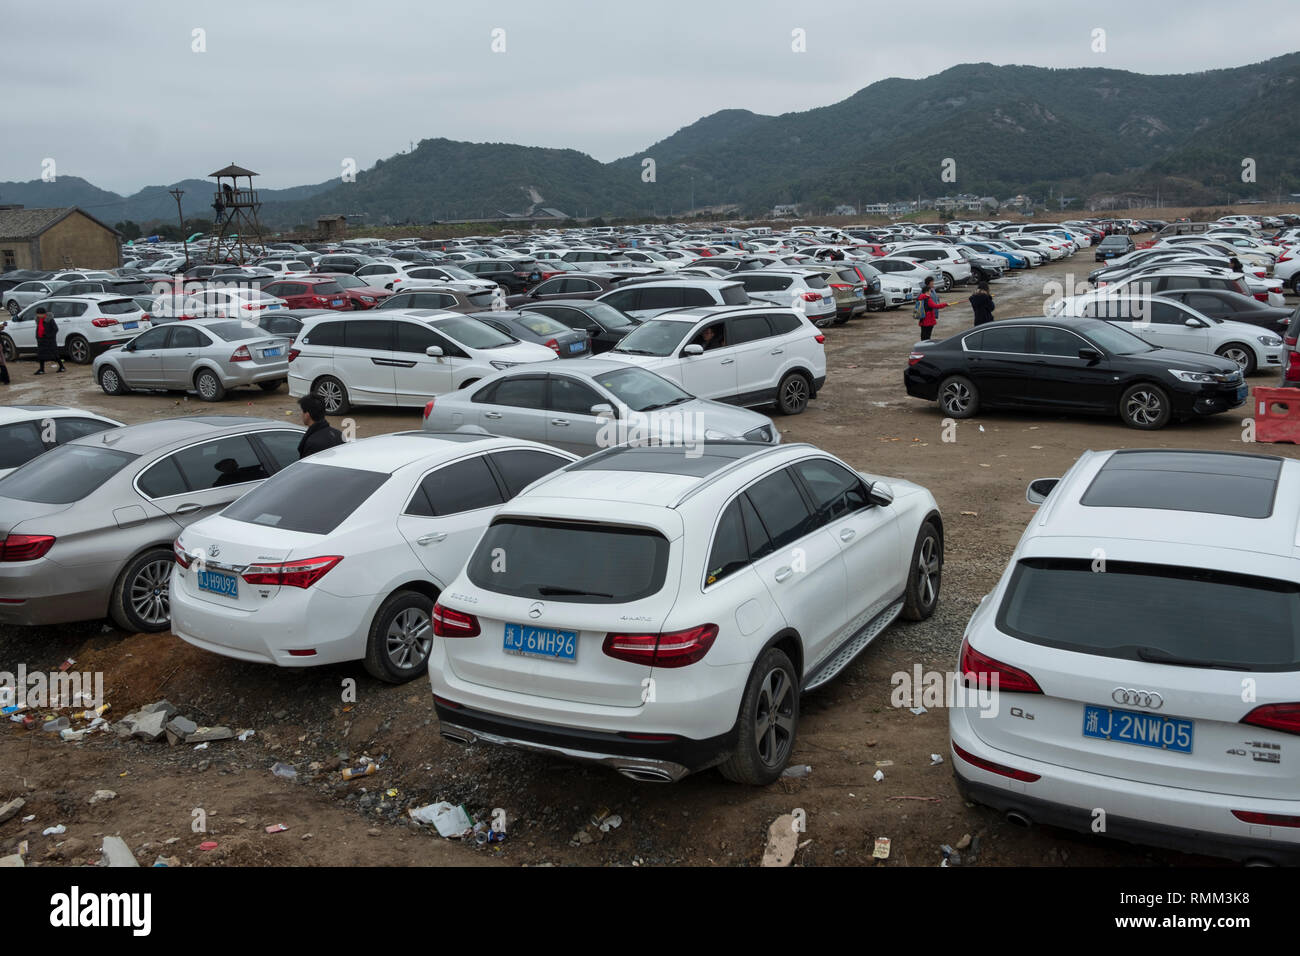 Le parking du Studio de Cinéma Xiangshan est encombrée de nombreux véhicules privés de touristes dans la région de Xiangshan, Zhejiang, Chine. 08-Feb-2019 Banque D'Images